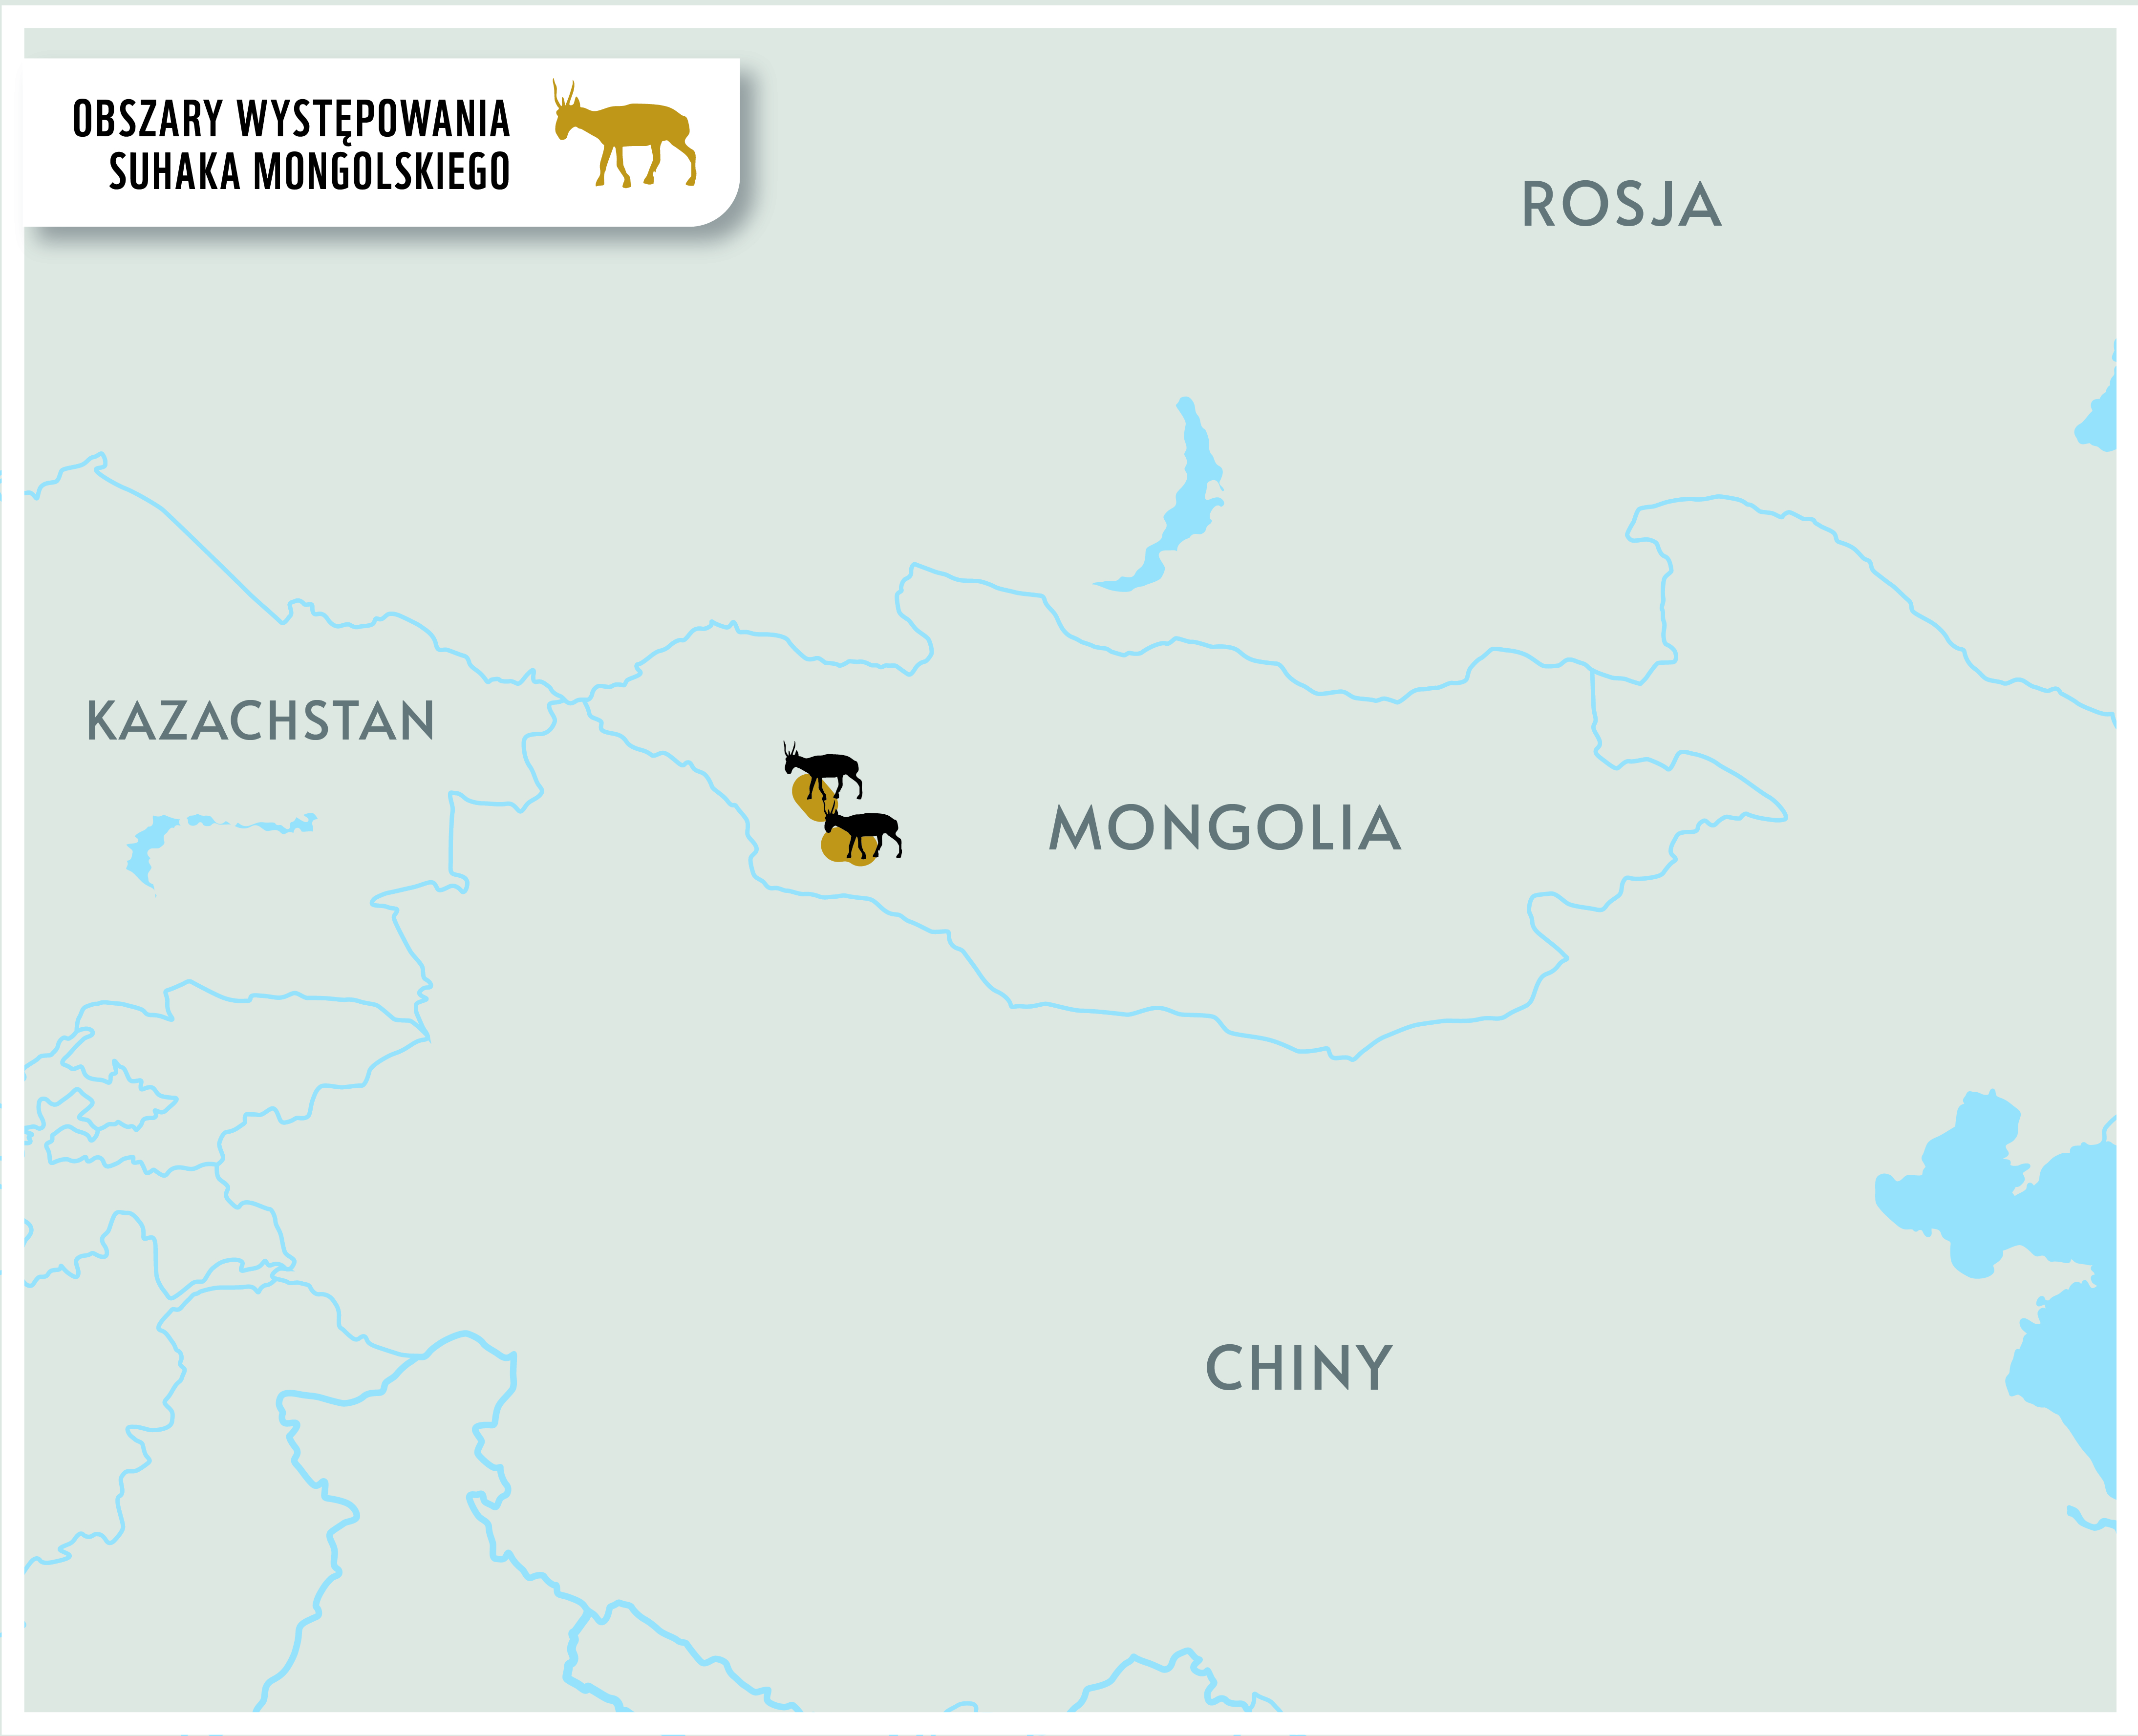 Mapa z obszarem występowania suhaka mongolskiego